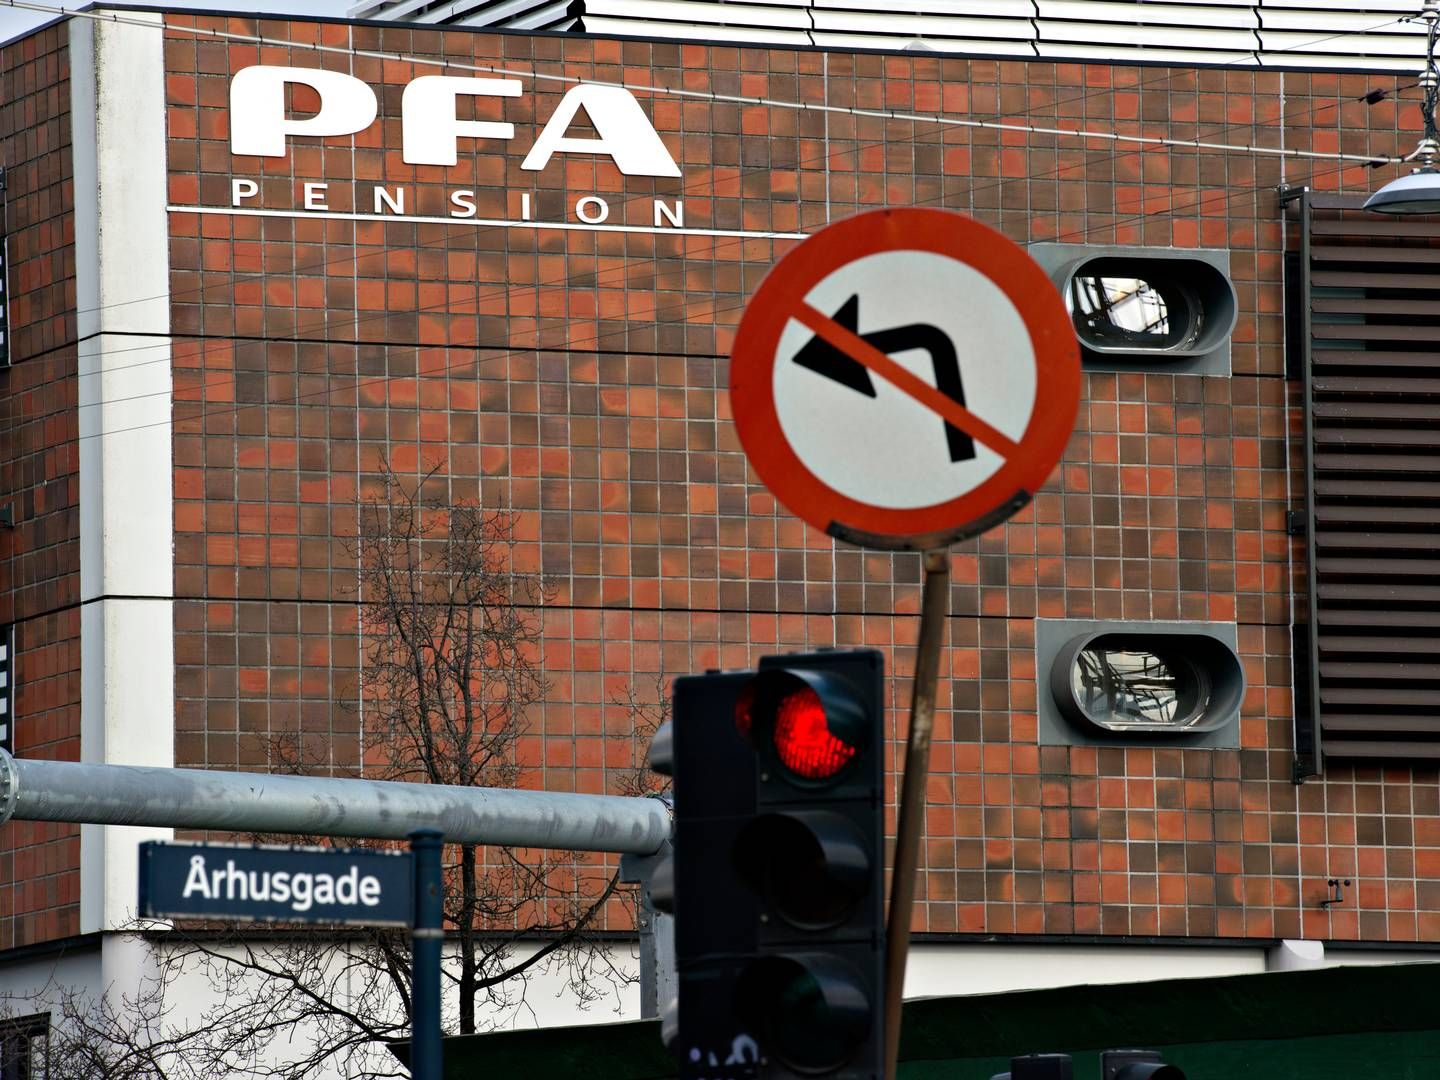 PFA er landets største kommercielle pensionsselskab med 1,3 mio. kunder. | Foto: Lars Krabbe/Jyllands-Posten/Ritzau Scanpix